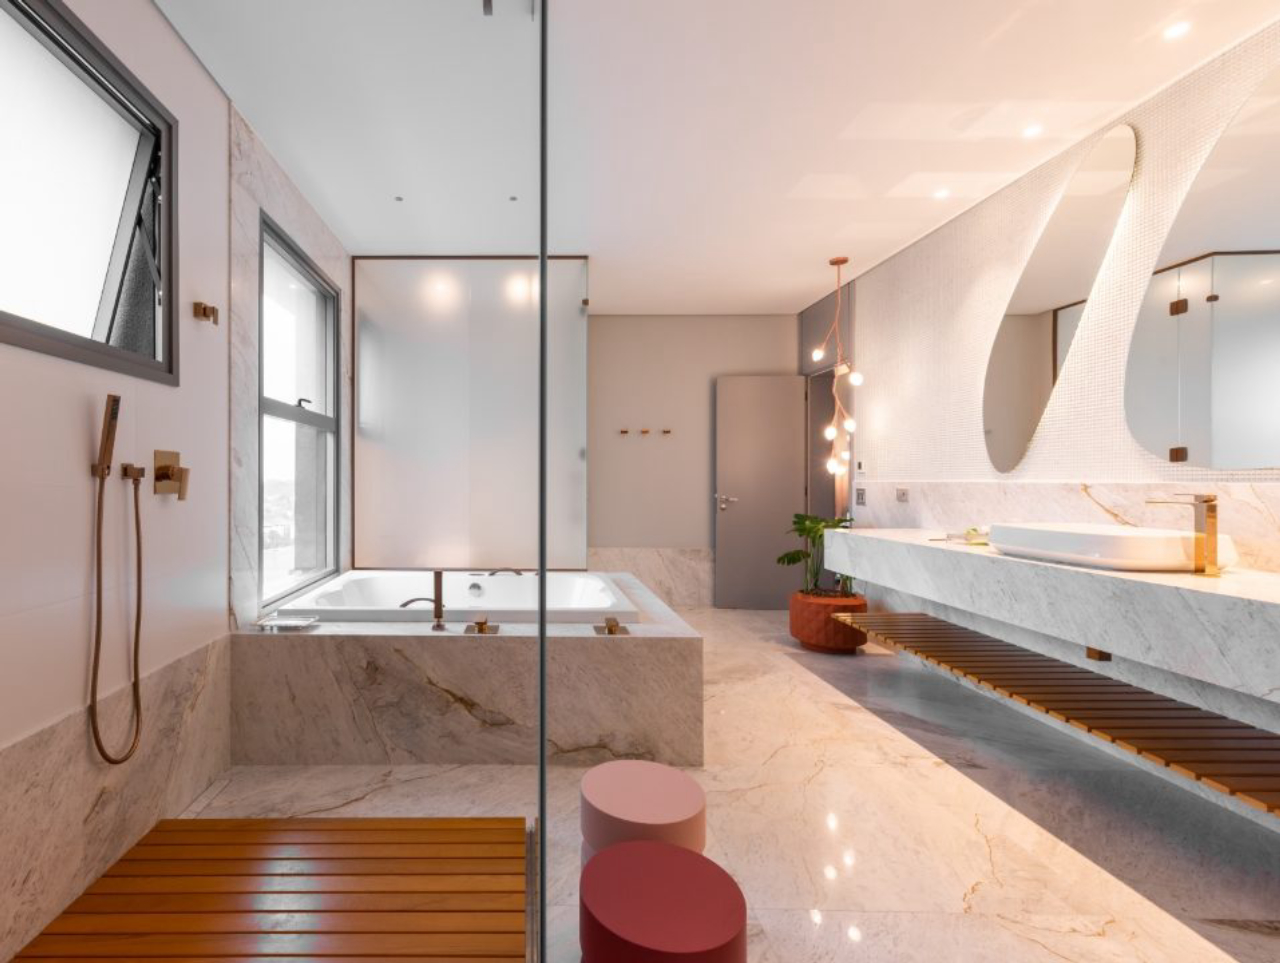 Formas orgânicas foram as escolhidas para destacar elementos da sala de banho, como espelhos e luminária.